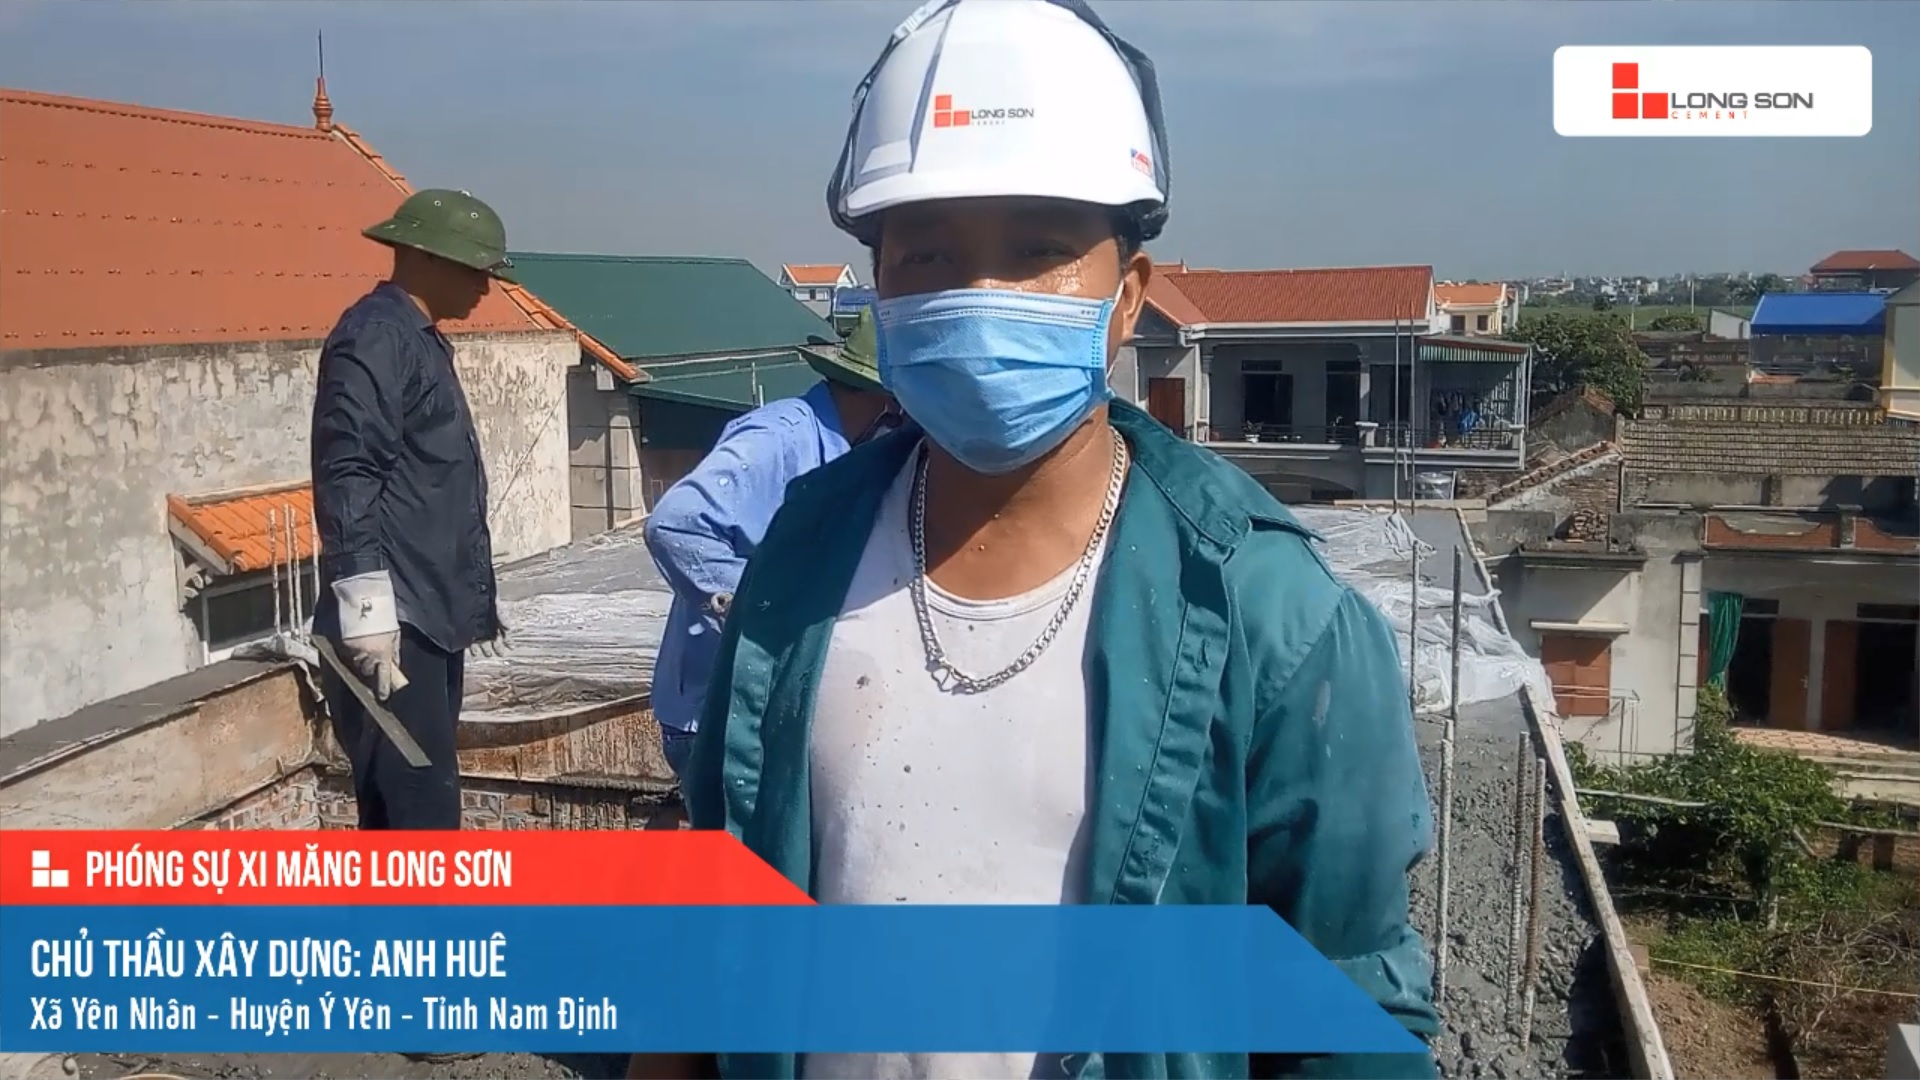 Phóng sự công trình sử dụng xi măng Long Sơn tại Nam Định ngày 18/08/2021